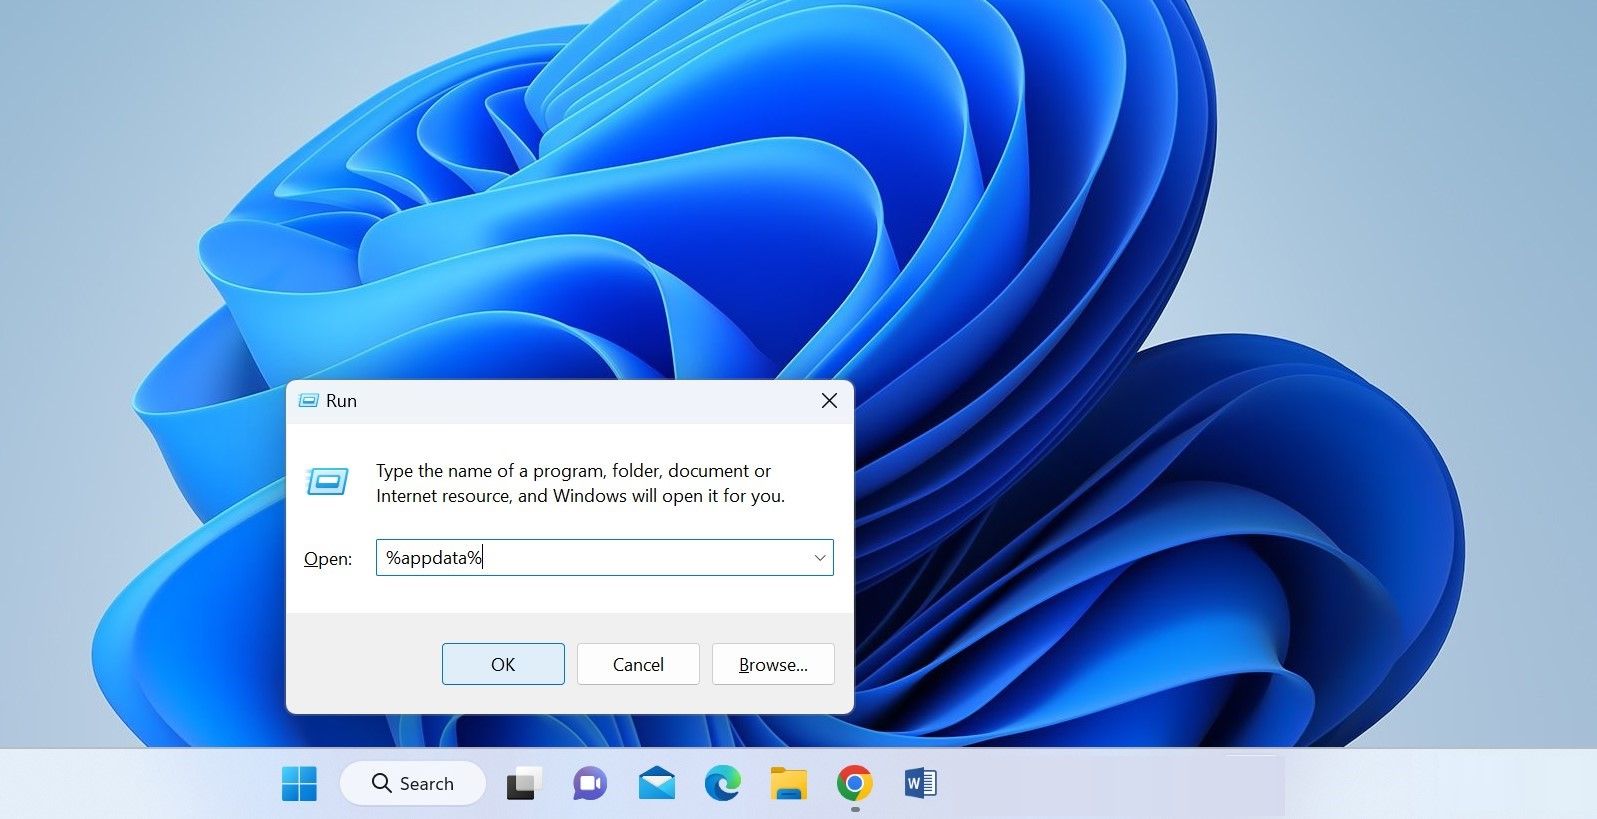 Open the AppData Folder in Windows File Explorer